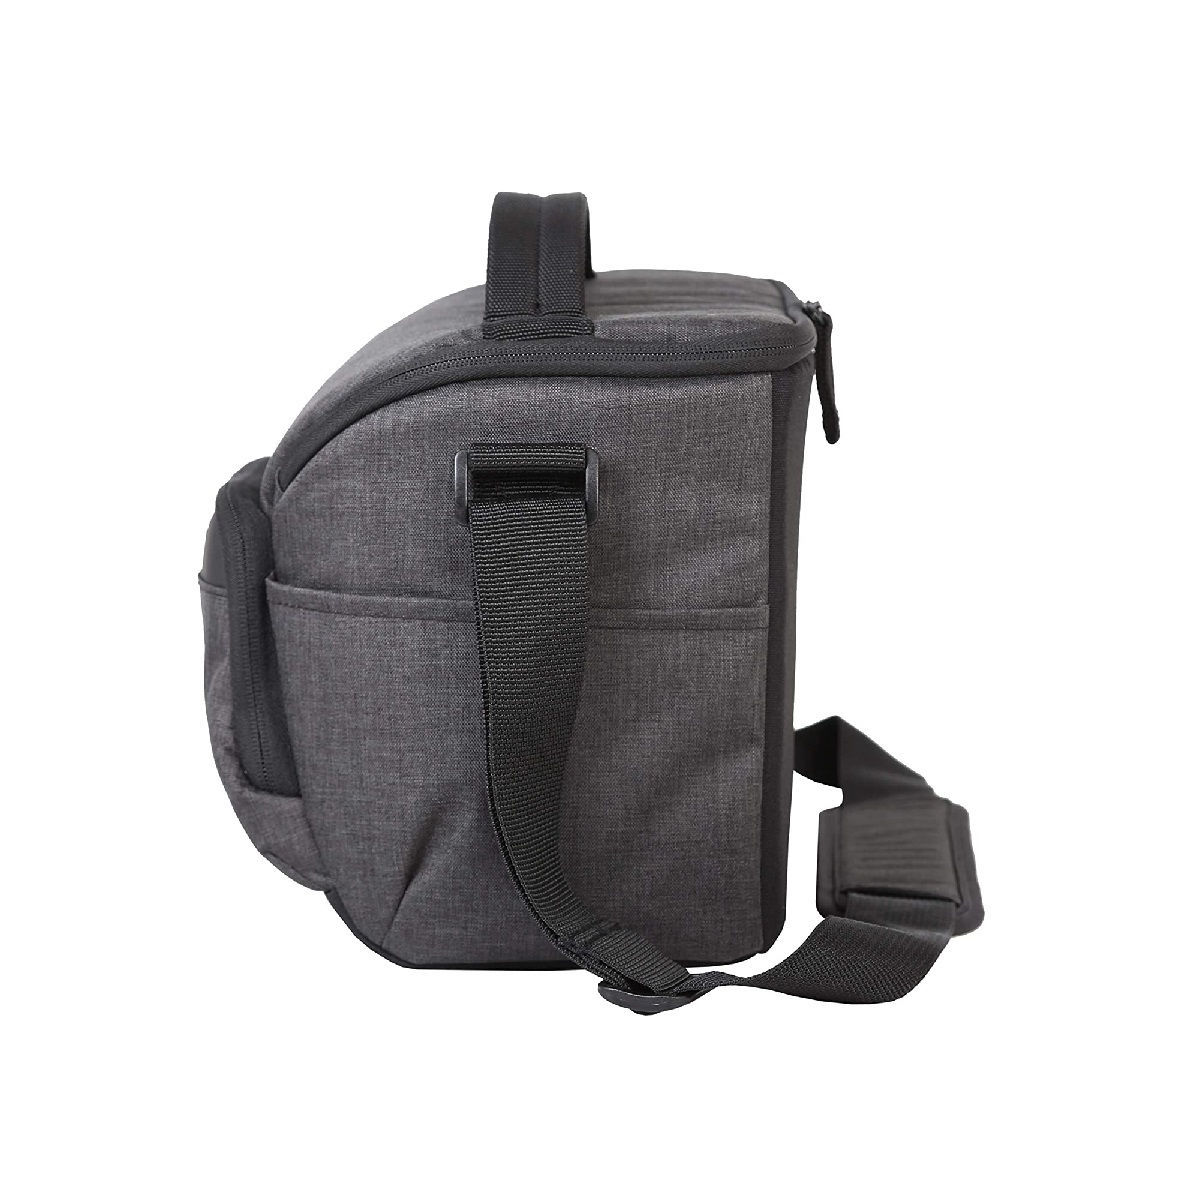 Vanguard Vesta Aspire 25 Shoulder Bag (Grey) | Future Forward